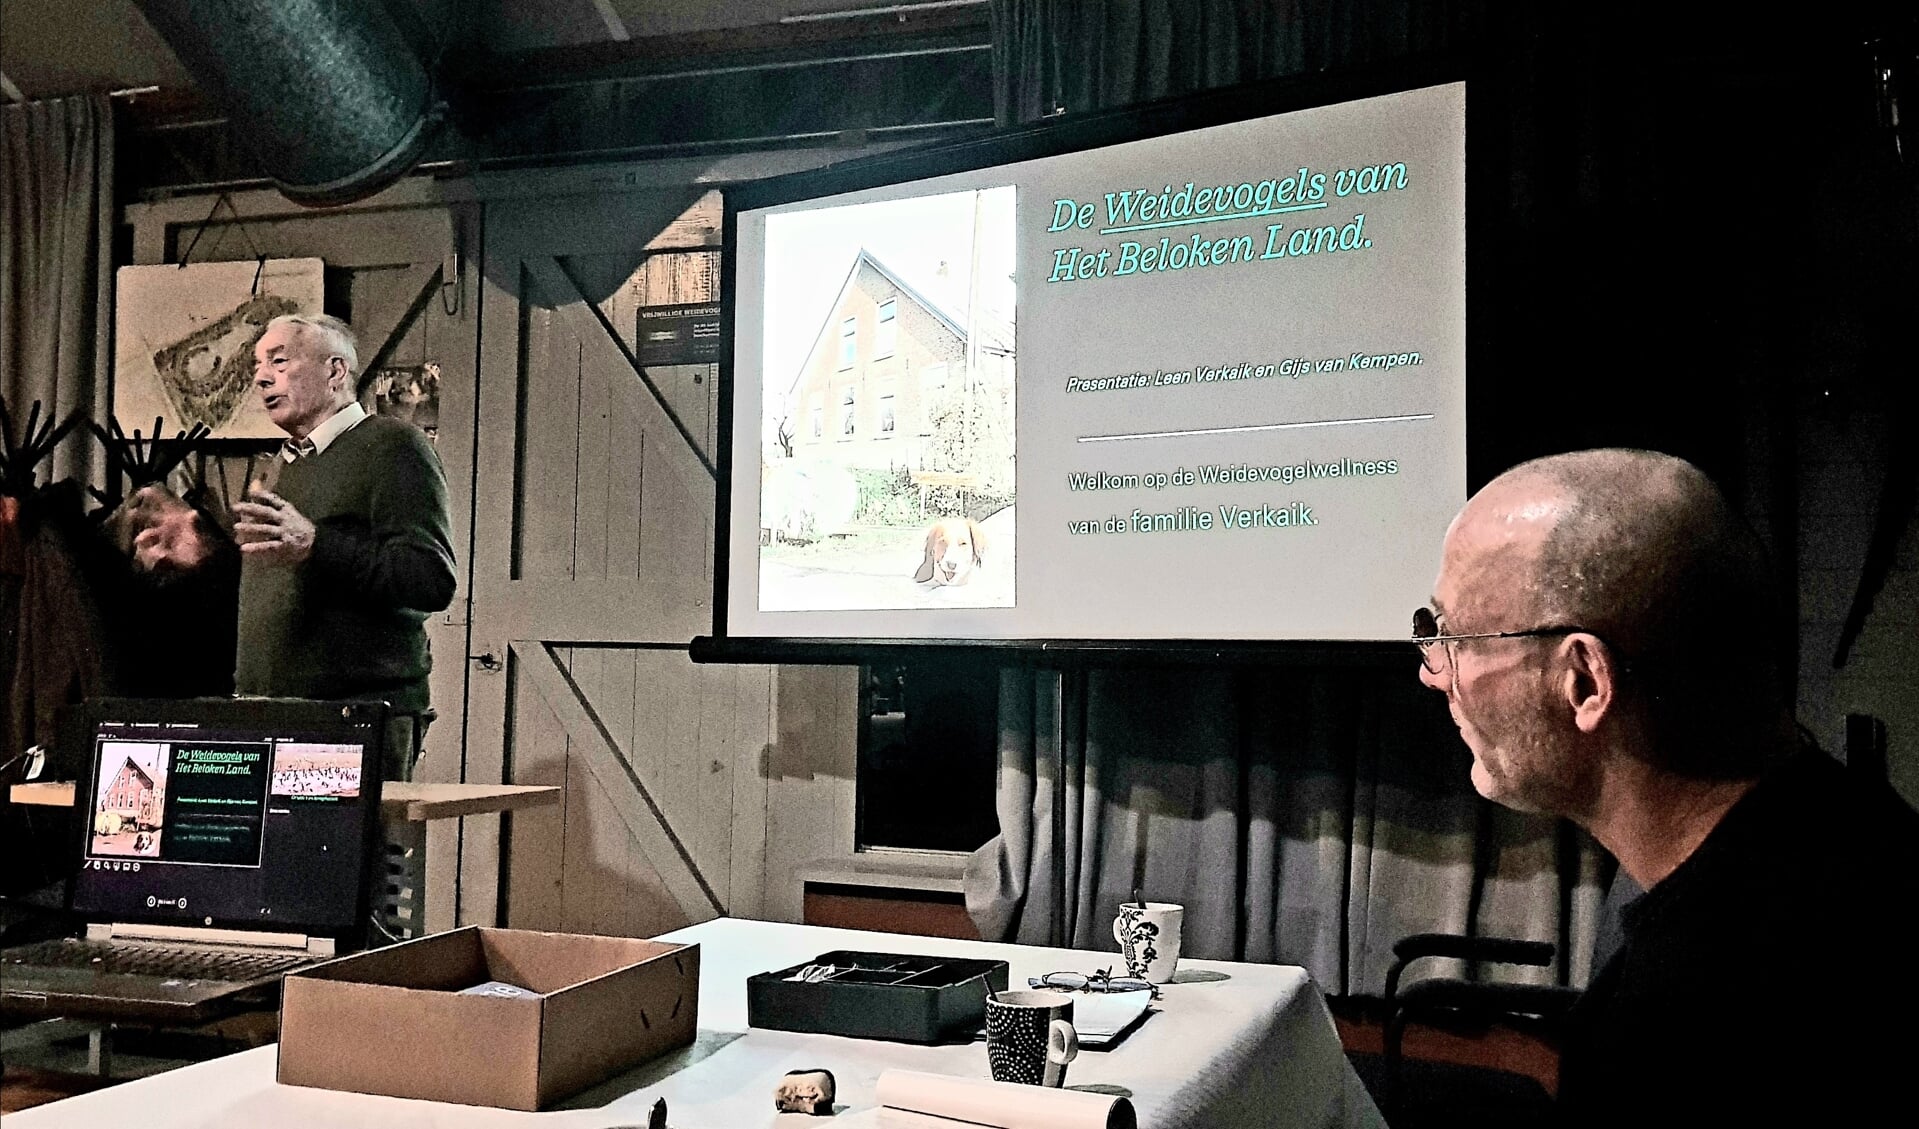 • Leen Verkaik (spreker) van Het Beloken Land en Gijs van Kempen tijdens hun presentatie.